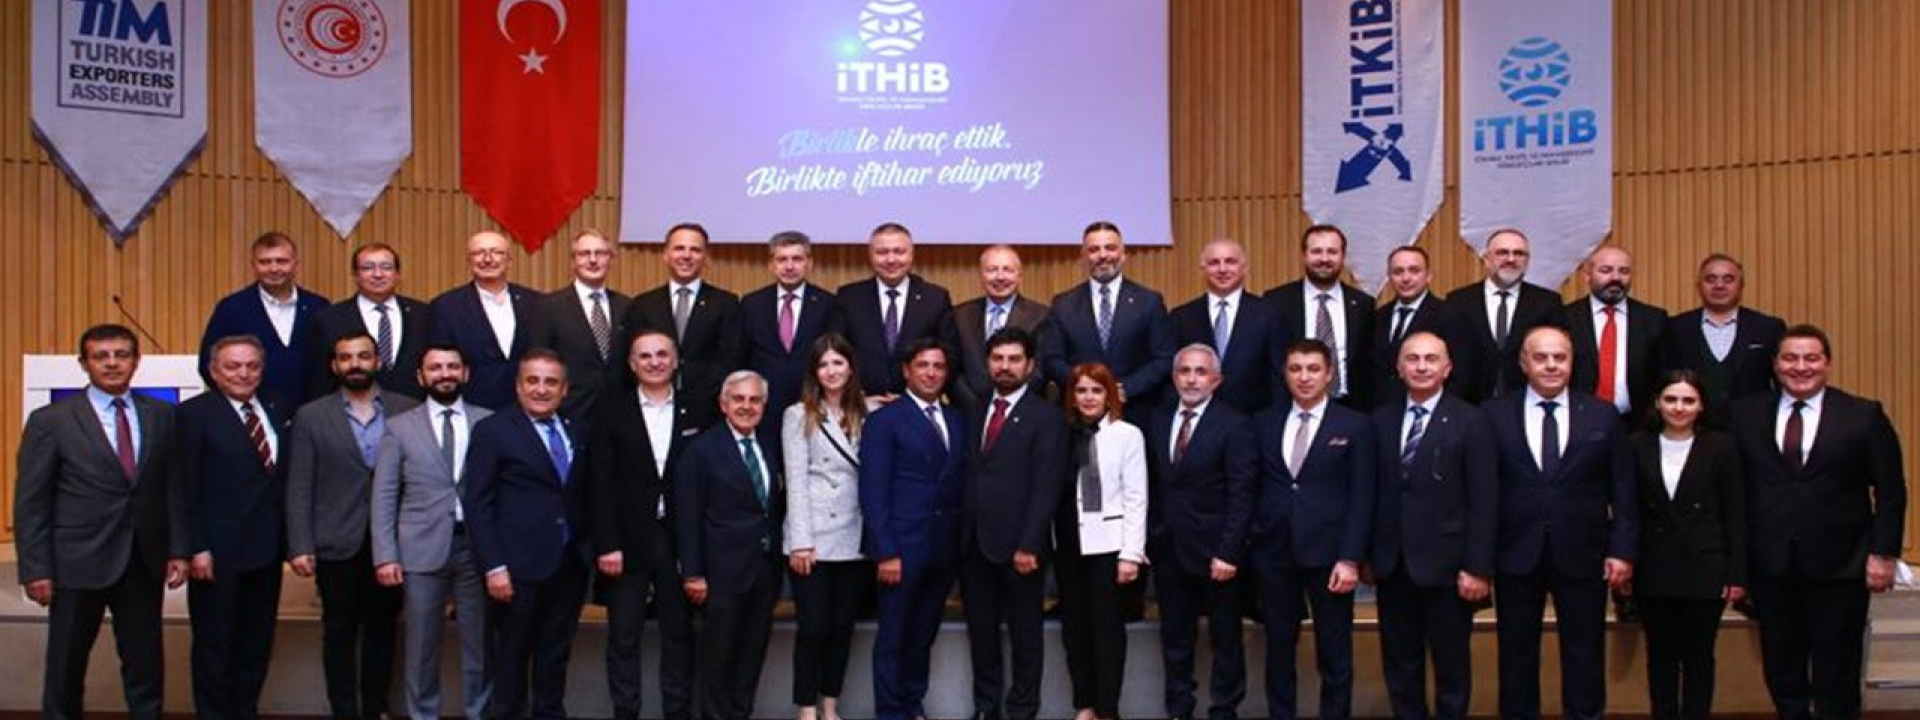 İTHİB Başkanı Ahmet Öksüz Virüs Salgınının Sektörümüze Olası Etkilerini Değerlendirdi